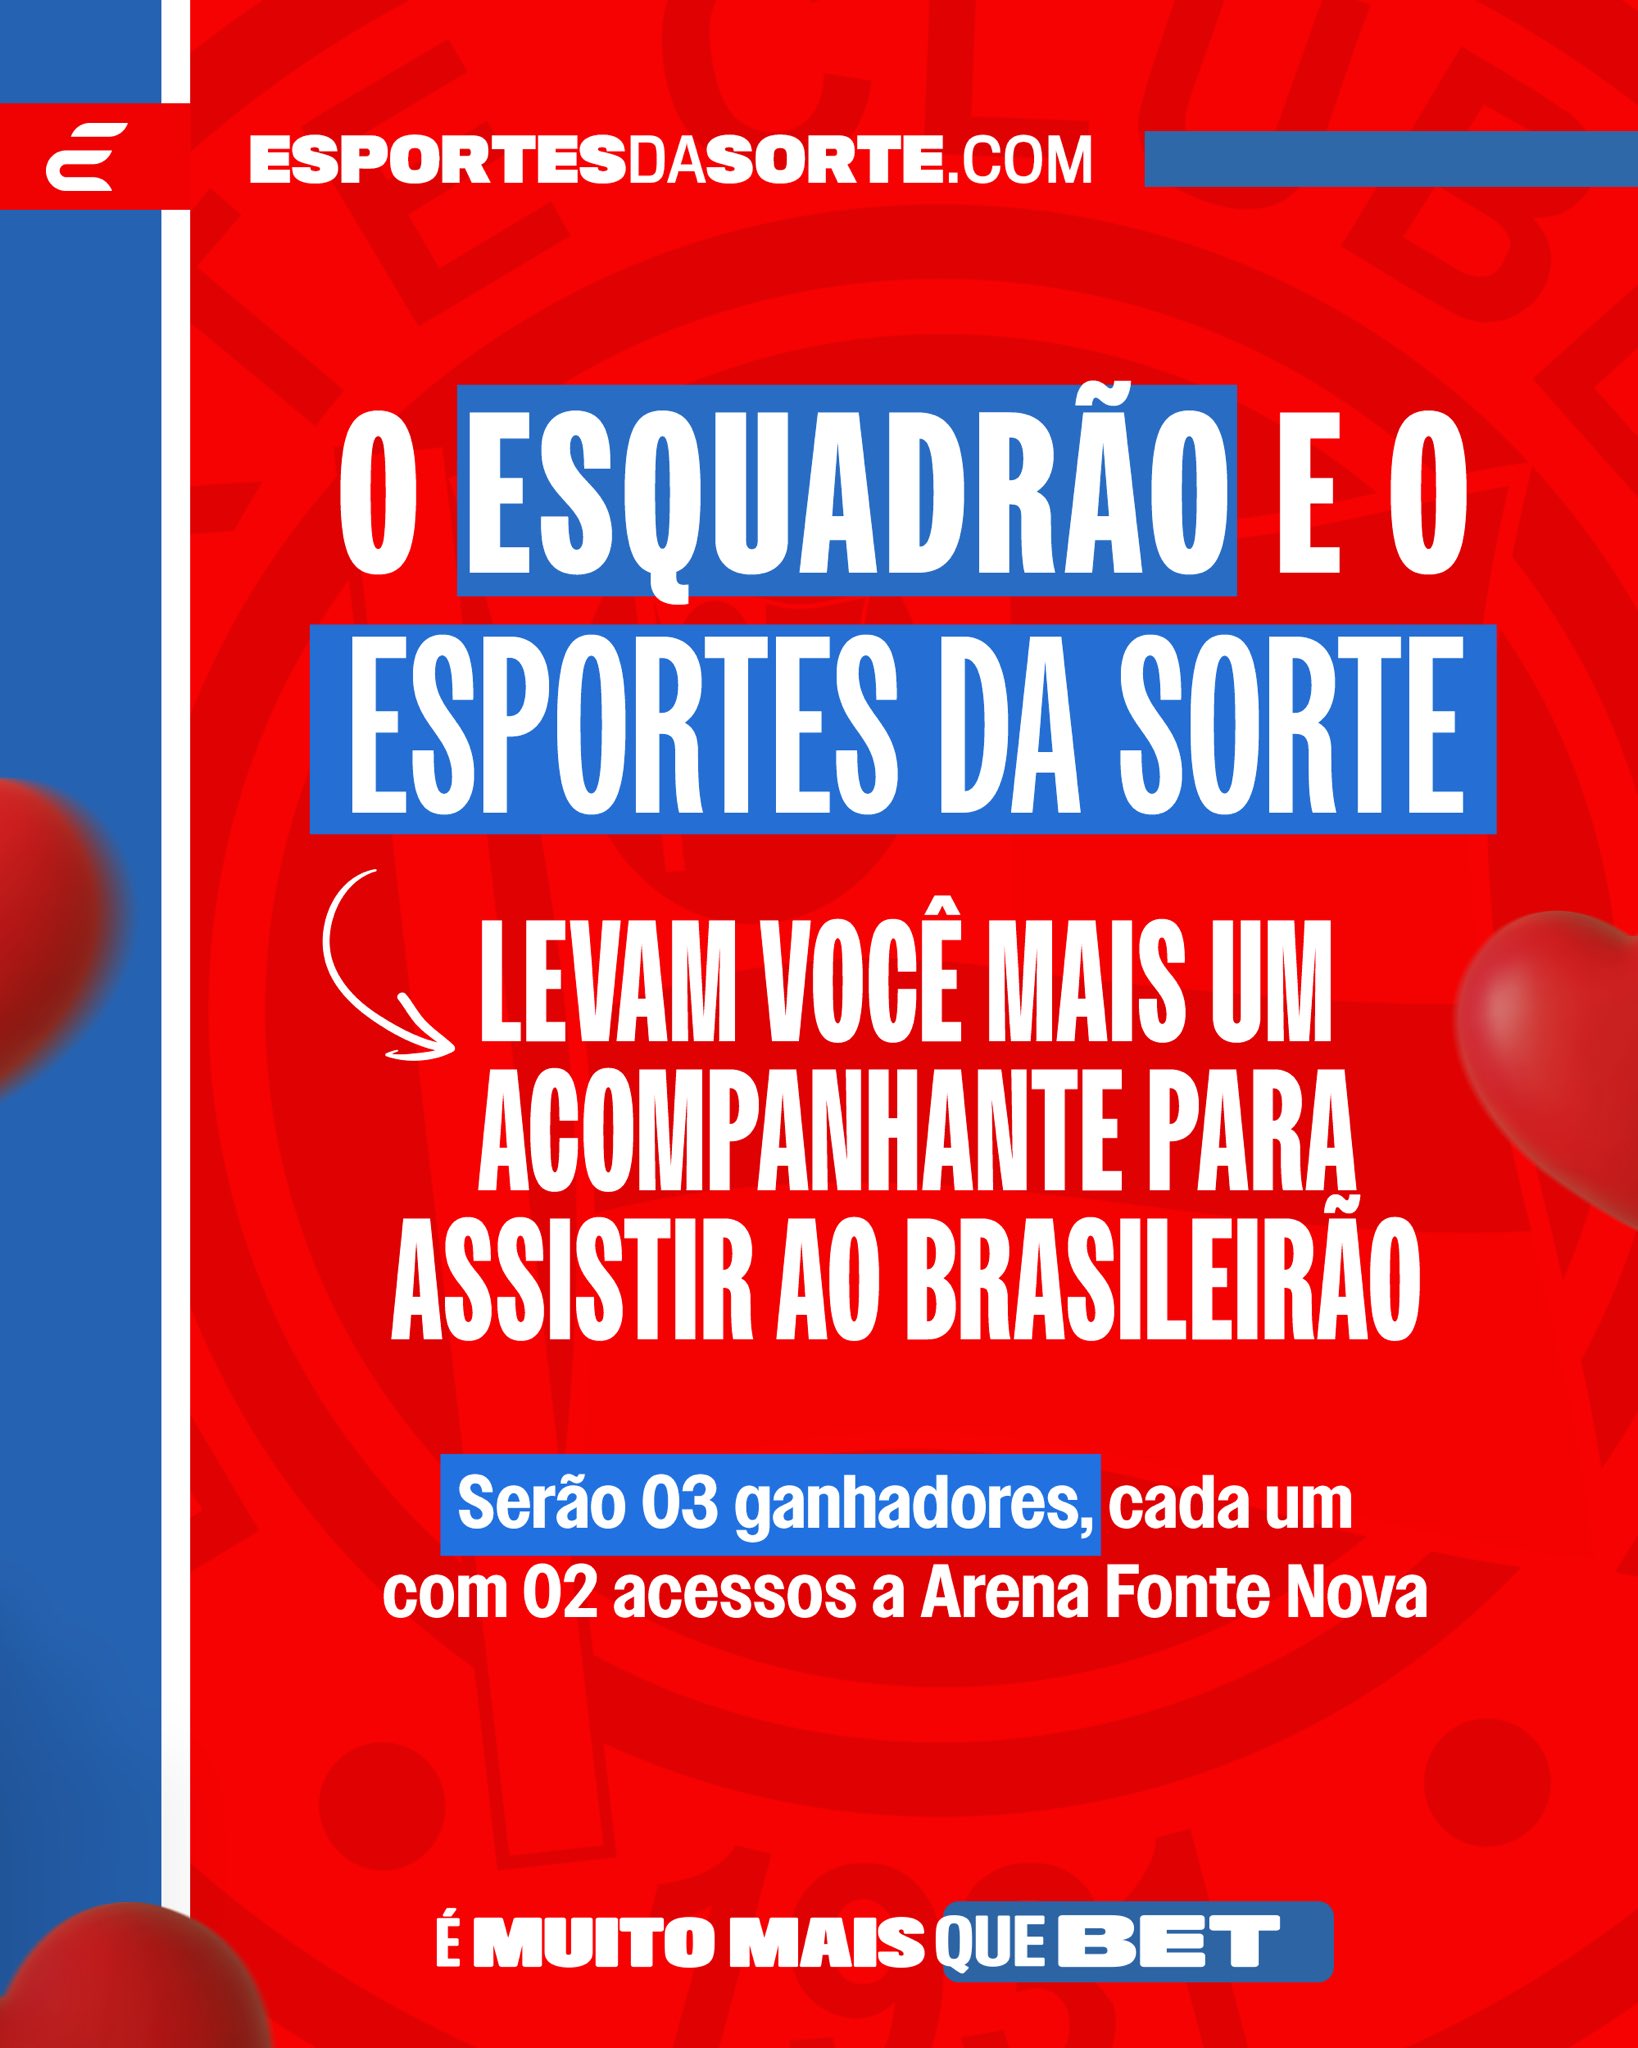 Esporte Clube Bahia on X: 💙❤️🤍 Sorte no Jogo e também no Amor! 🤞🏽  Junto com @EsportesDaSorte, o Tricolor leva você e um acompanhante ao jogo  contra o Cruzeiro neste sábado. 🎫🎫